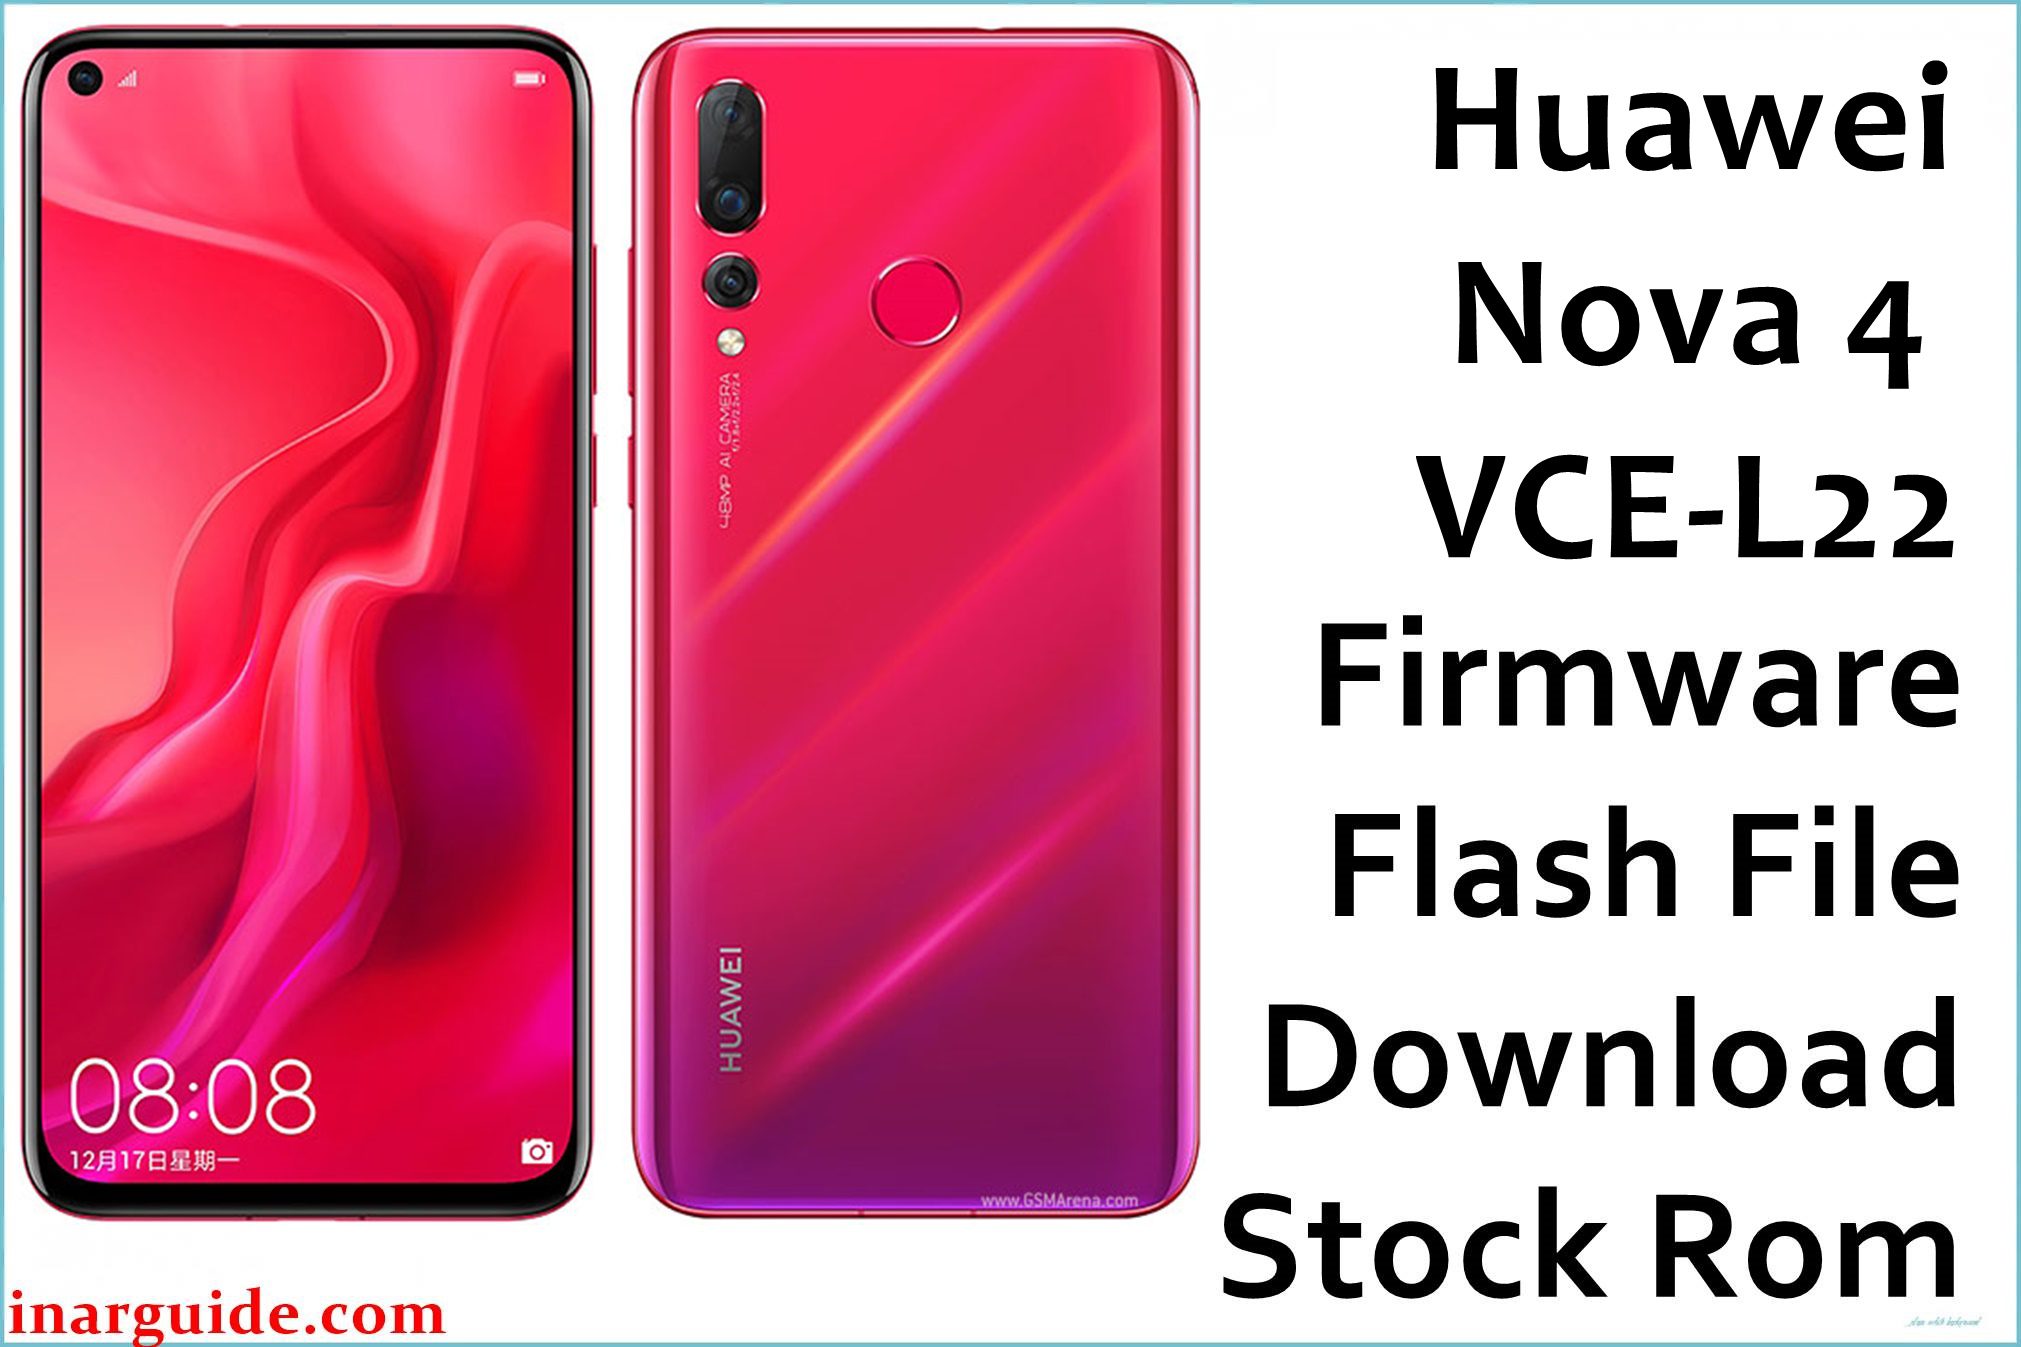 Huawei Nova 4 VCE L22